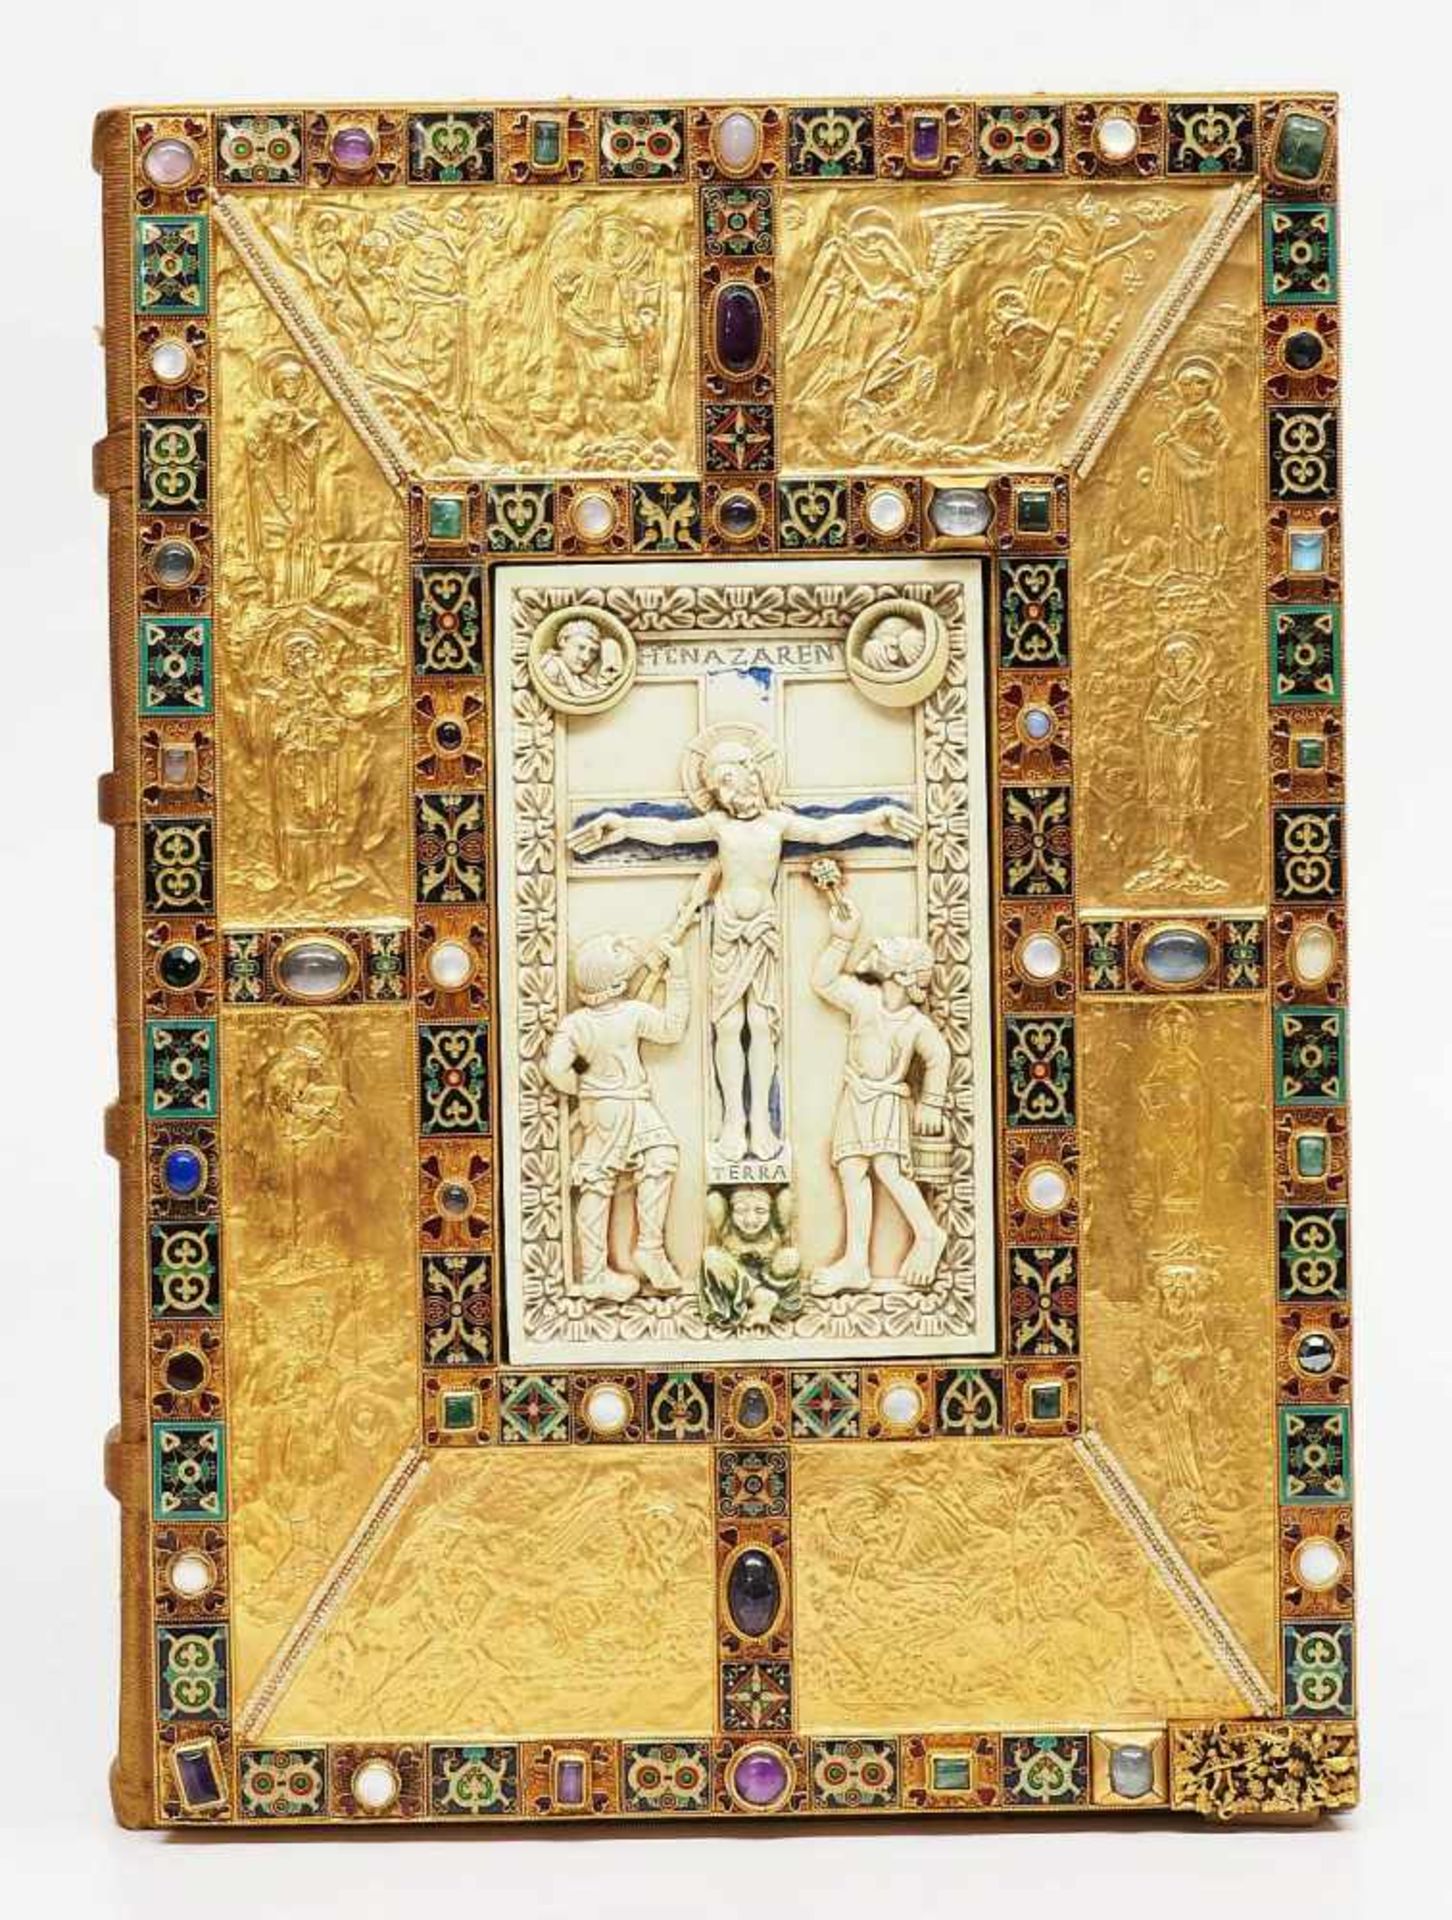 Das goldene Evangelienbuch von Echternach. Das goldene Evangelienbuch von Echternach und - Bild 4 aus 12